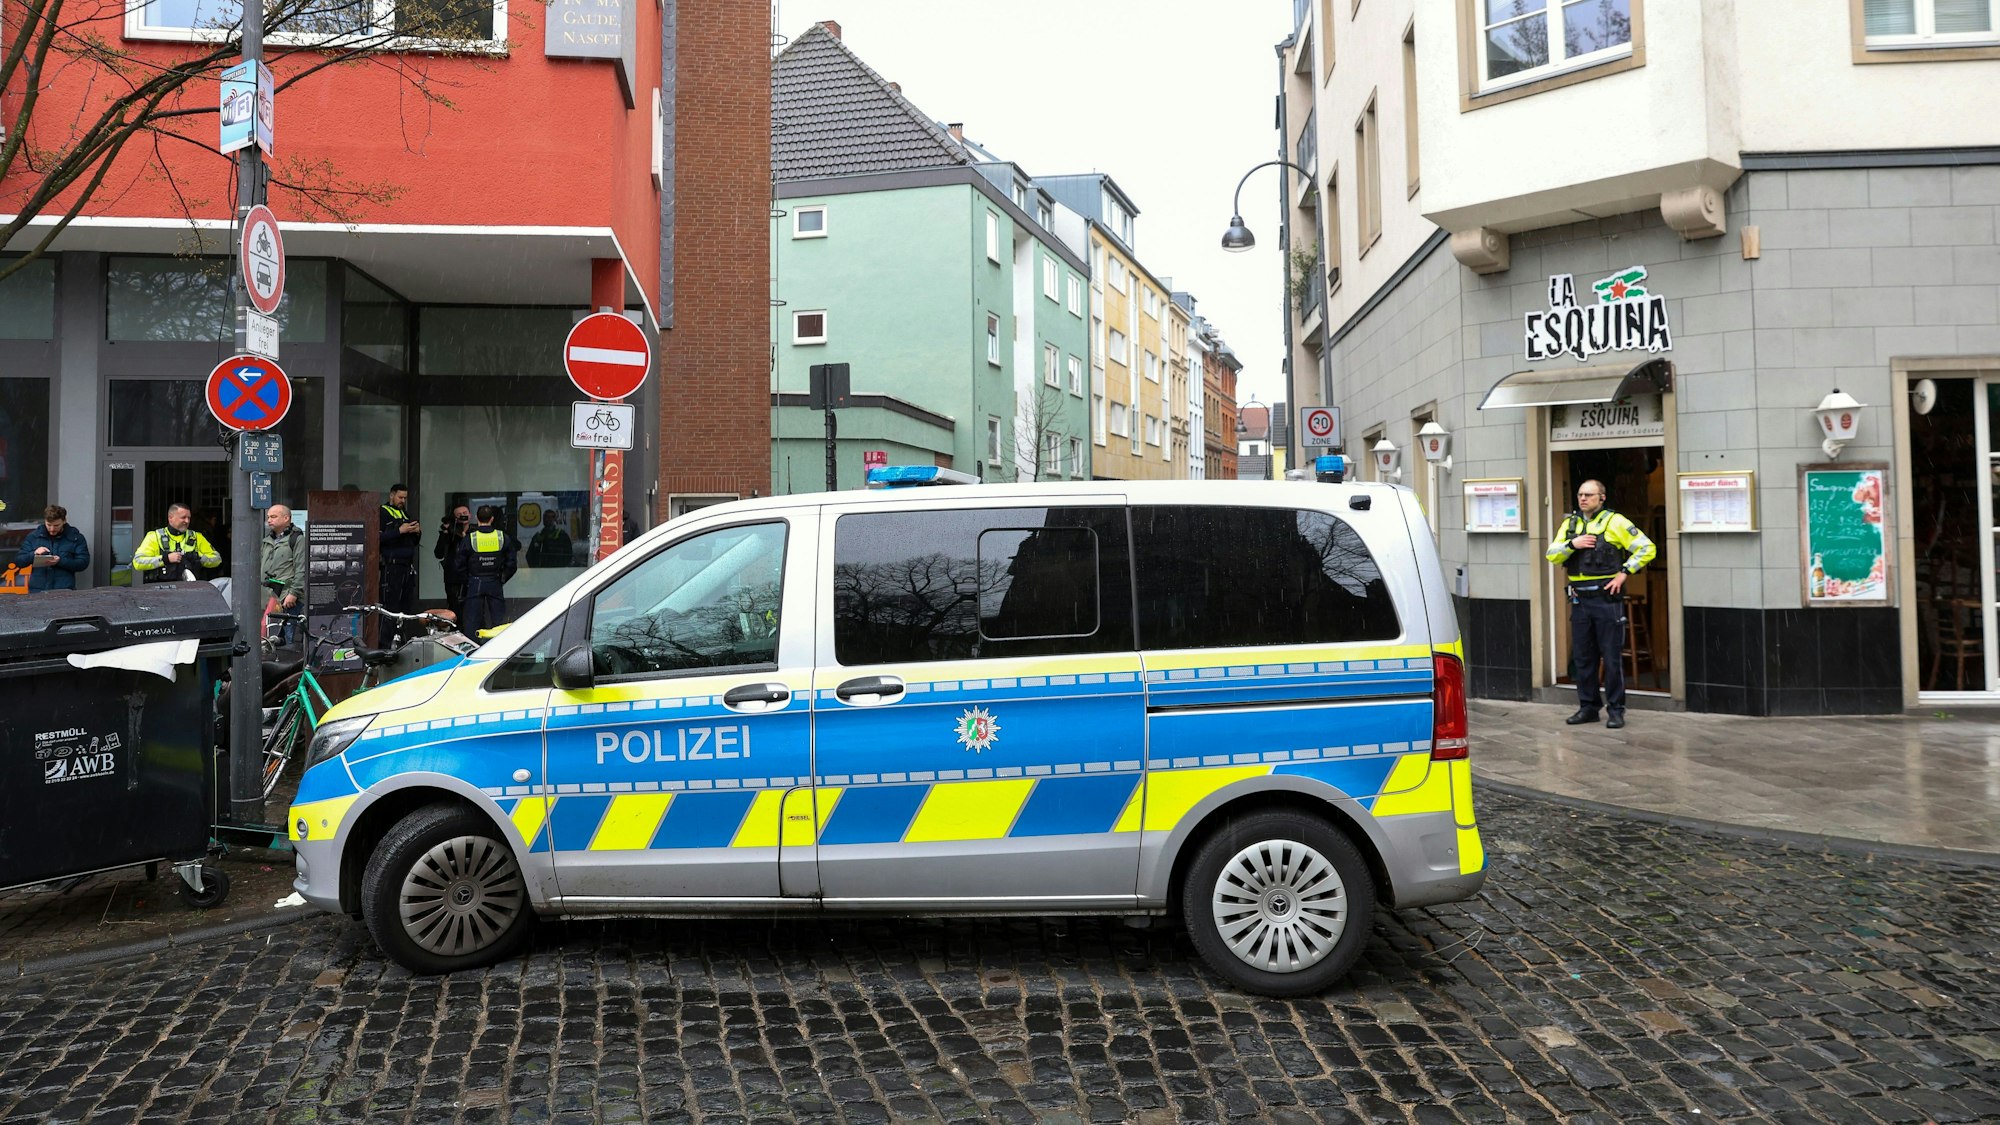 Polizei-Auto steht an einer Straße in Köln, im Hintergrund sind mehrere Einsatzkräfte und Privatpersonen zu sehen.